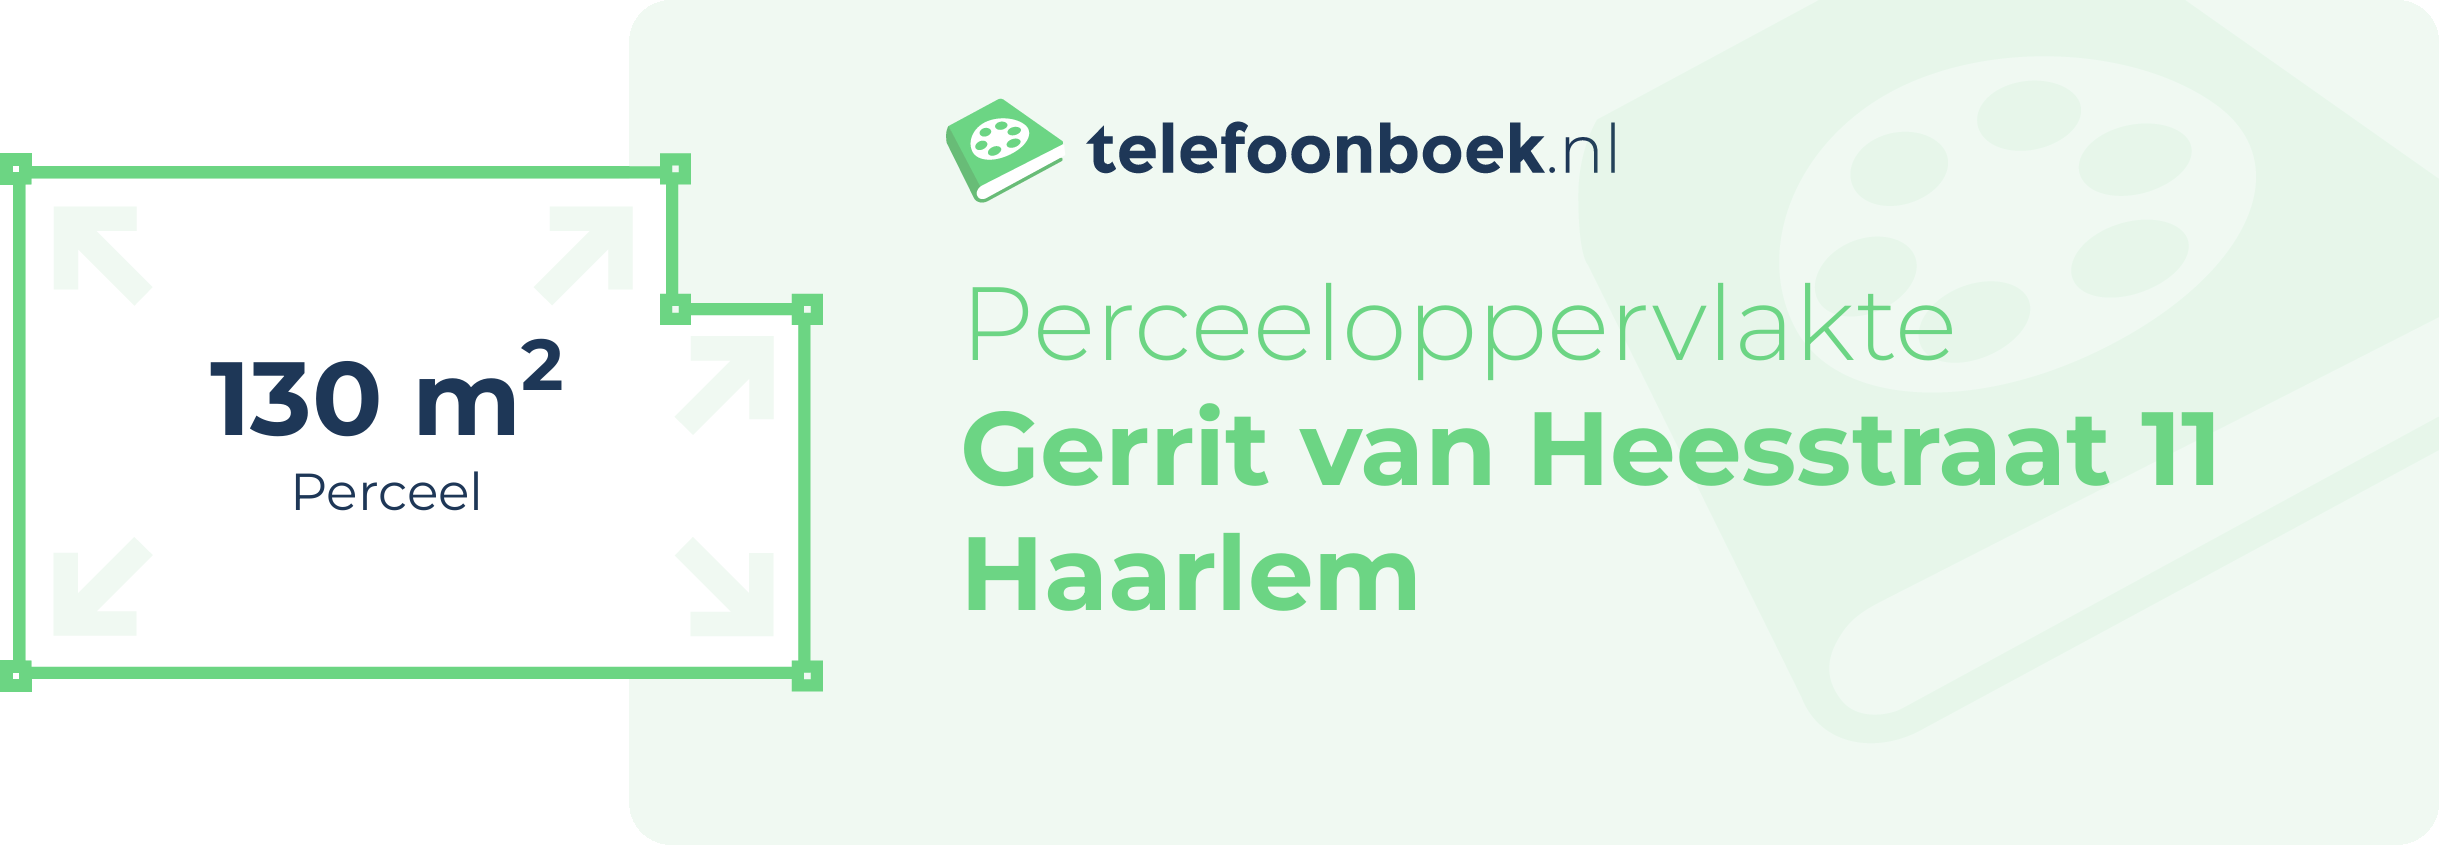 Perceeloppervlakte Gerrit Van Heesstraat 11 Haarlem